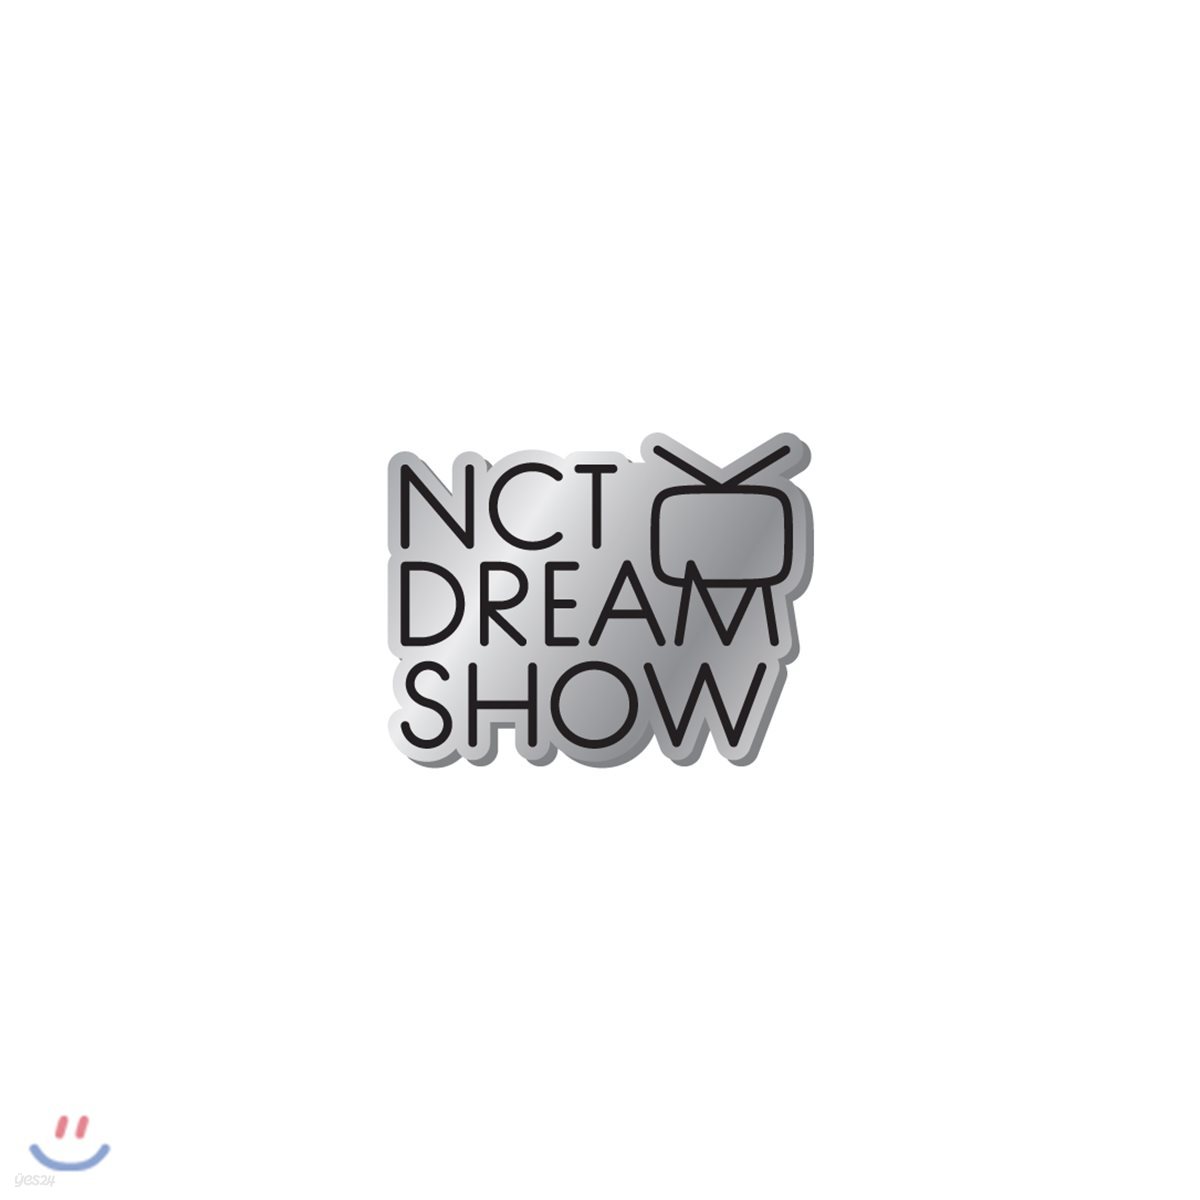 NCT DREAM SHOW 뱃지 A